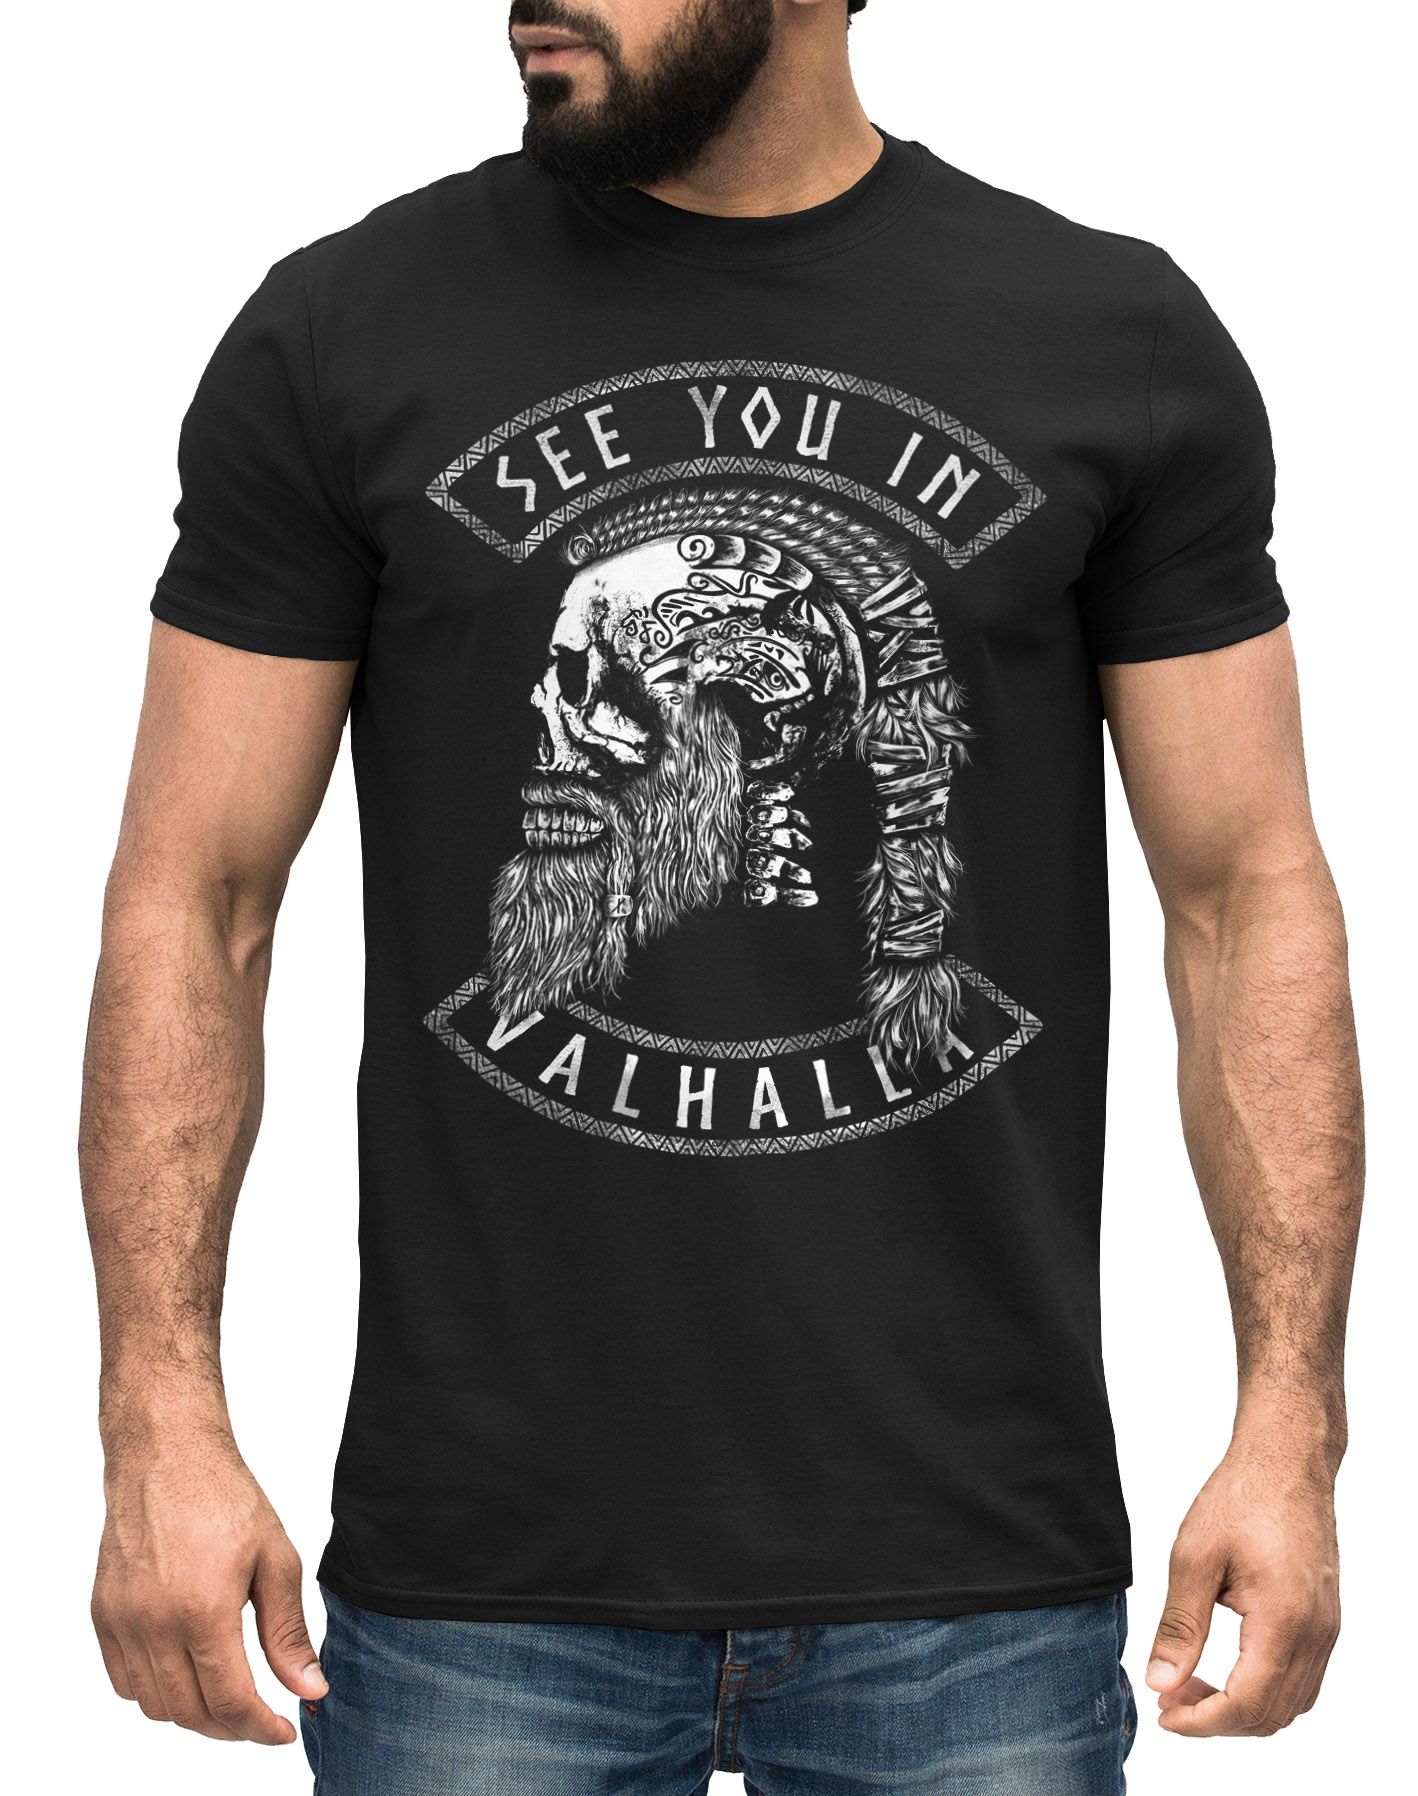 Herren T-Shirt Wikinger Totenkpf Spruch See you in Valhalla Odin Ragnar nordische Mythologie Neverless®